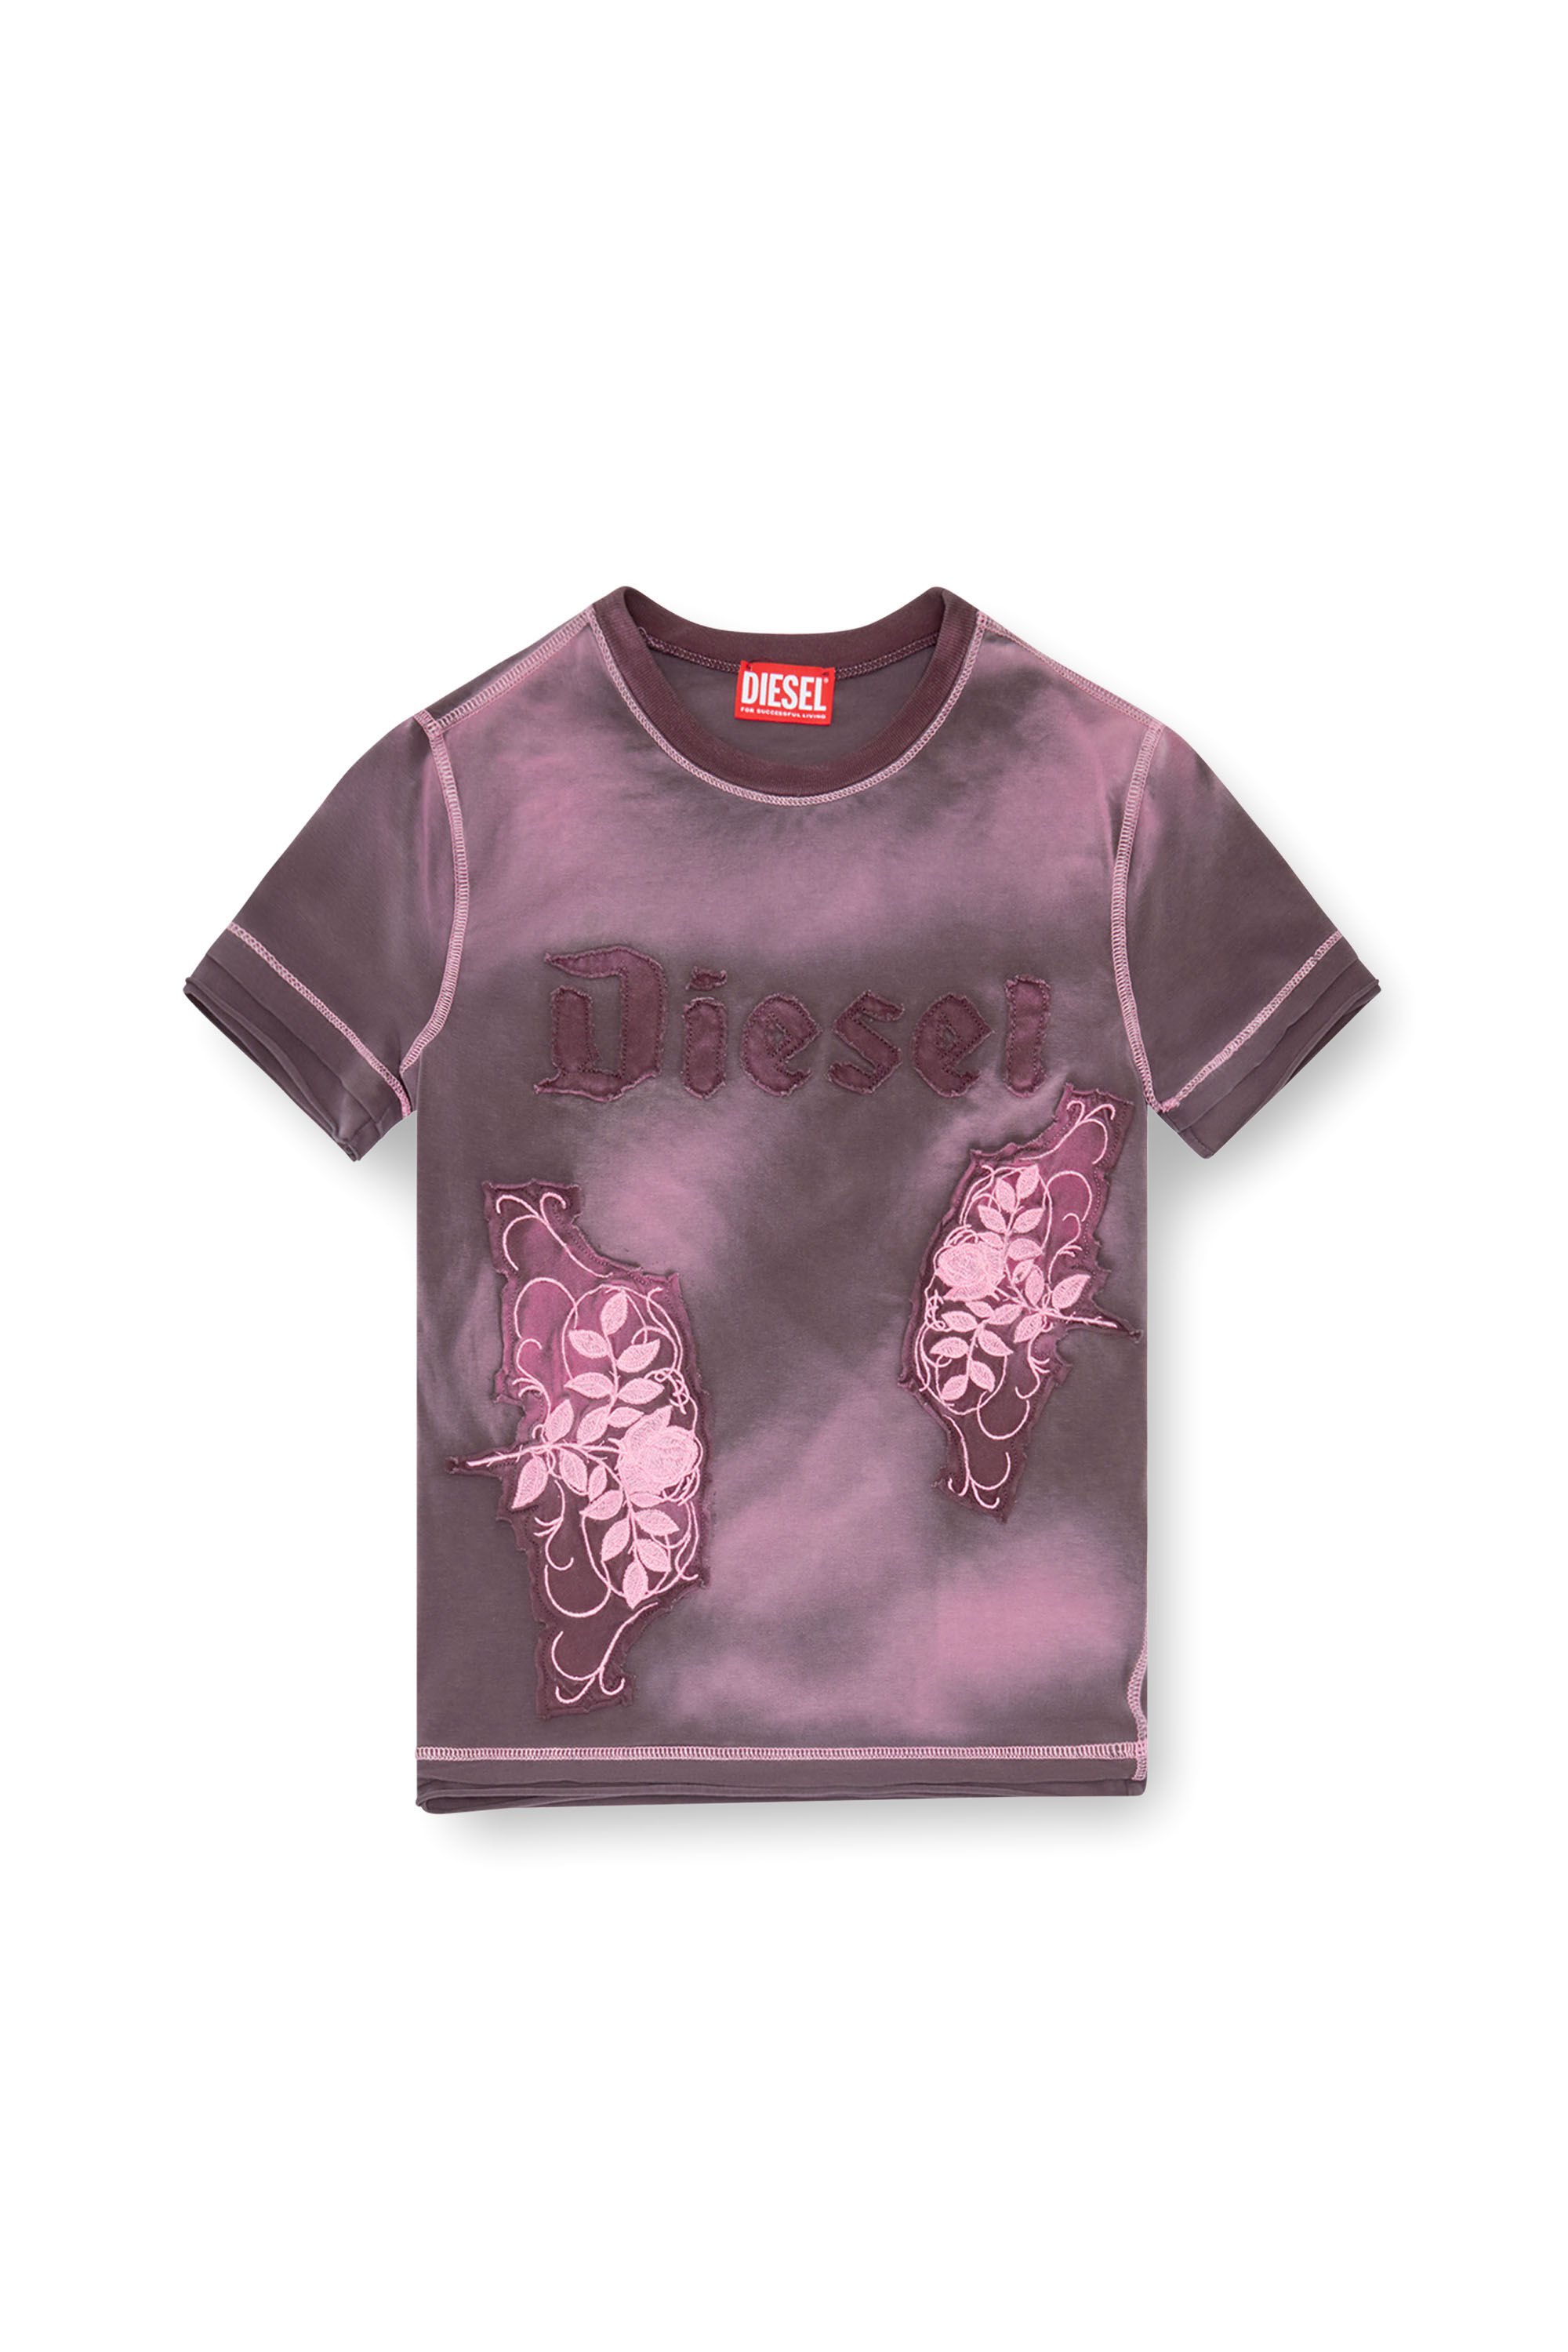 Diesel - T-UNCUT, Damen T-Shirt mit aufgestickten floralen Patches in Violett - Image 2